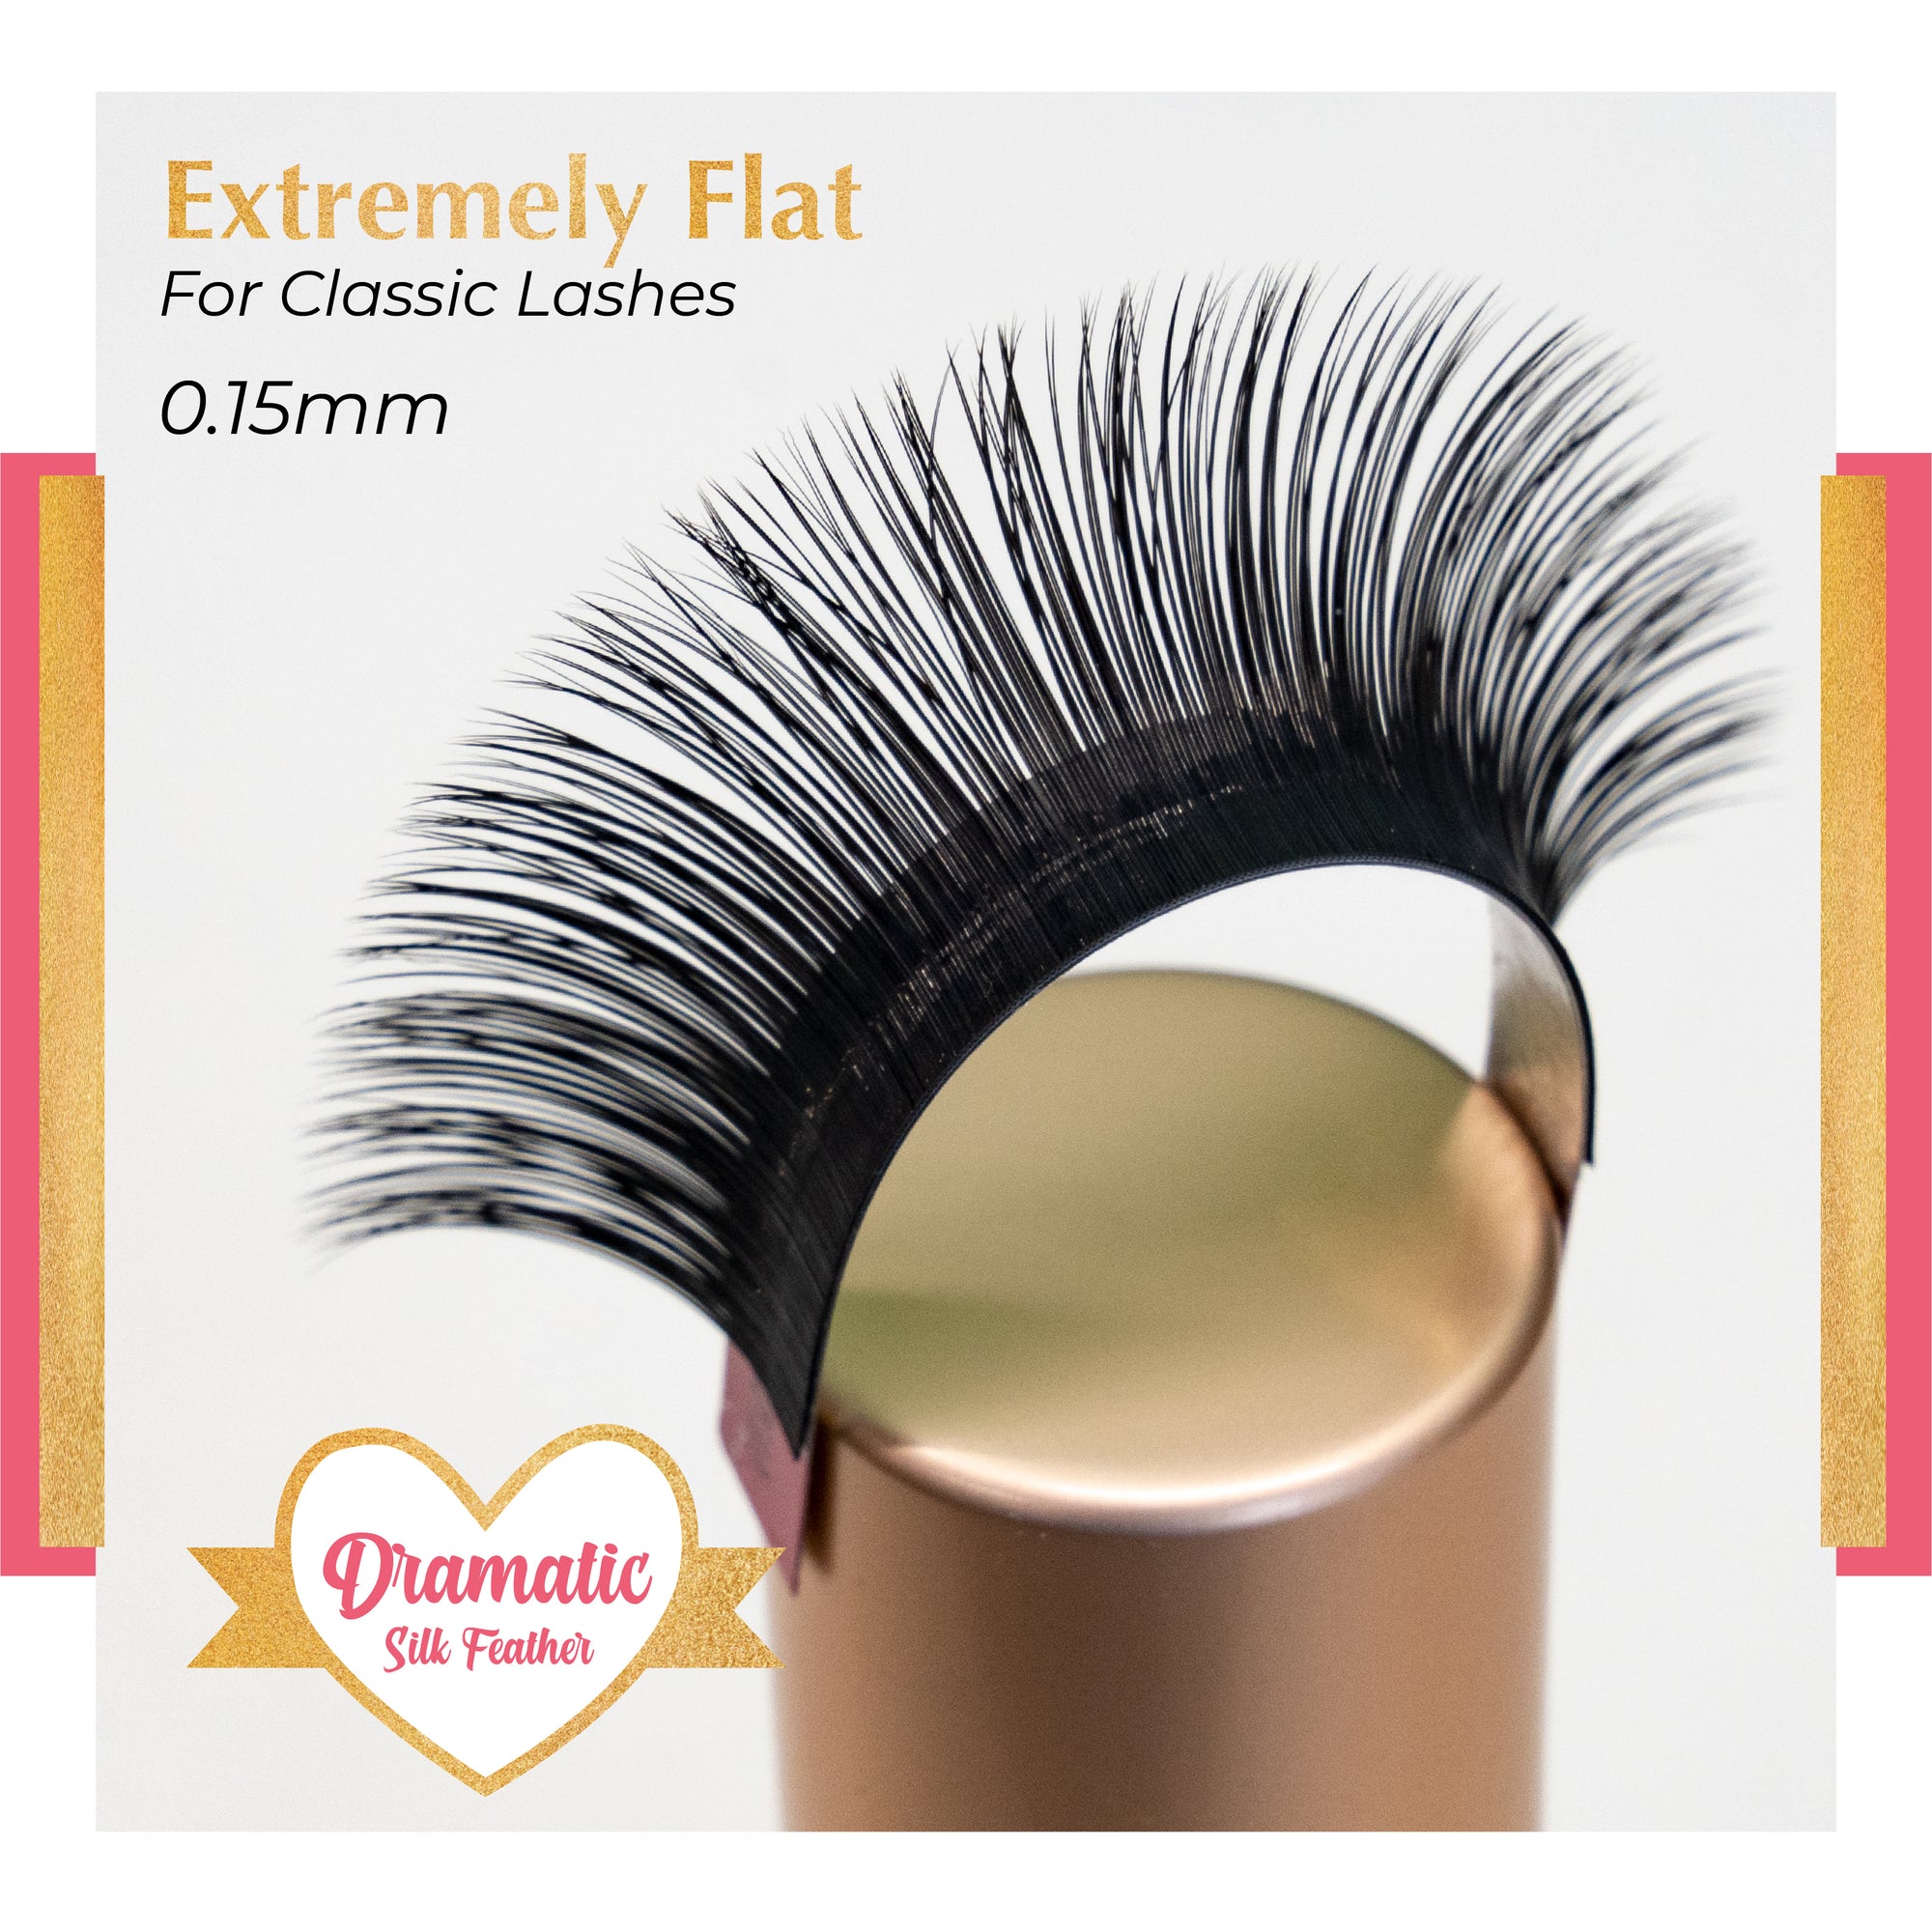 Dramatic Silk Feather - CC Curl - Flat